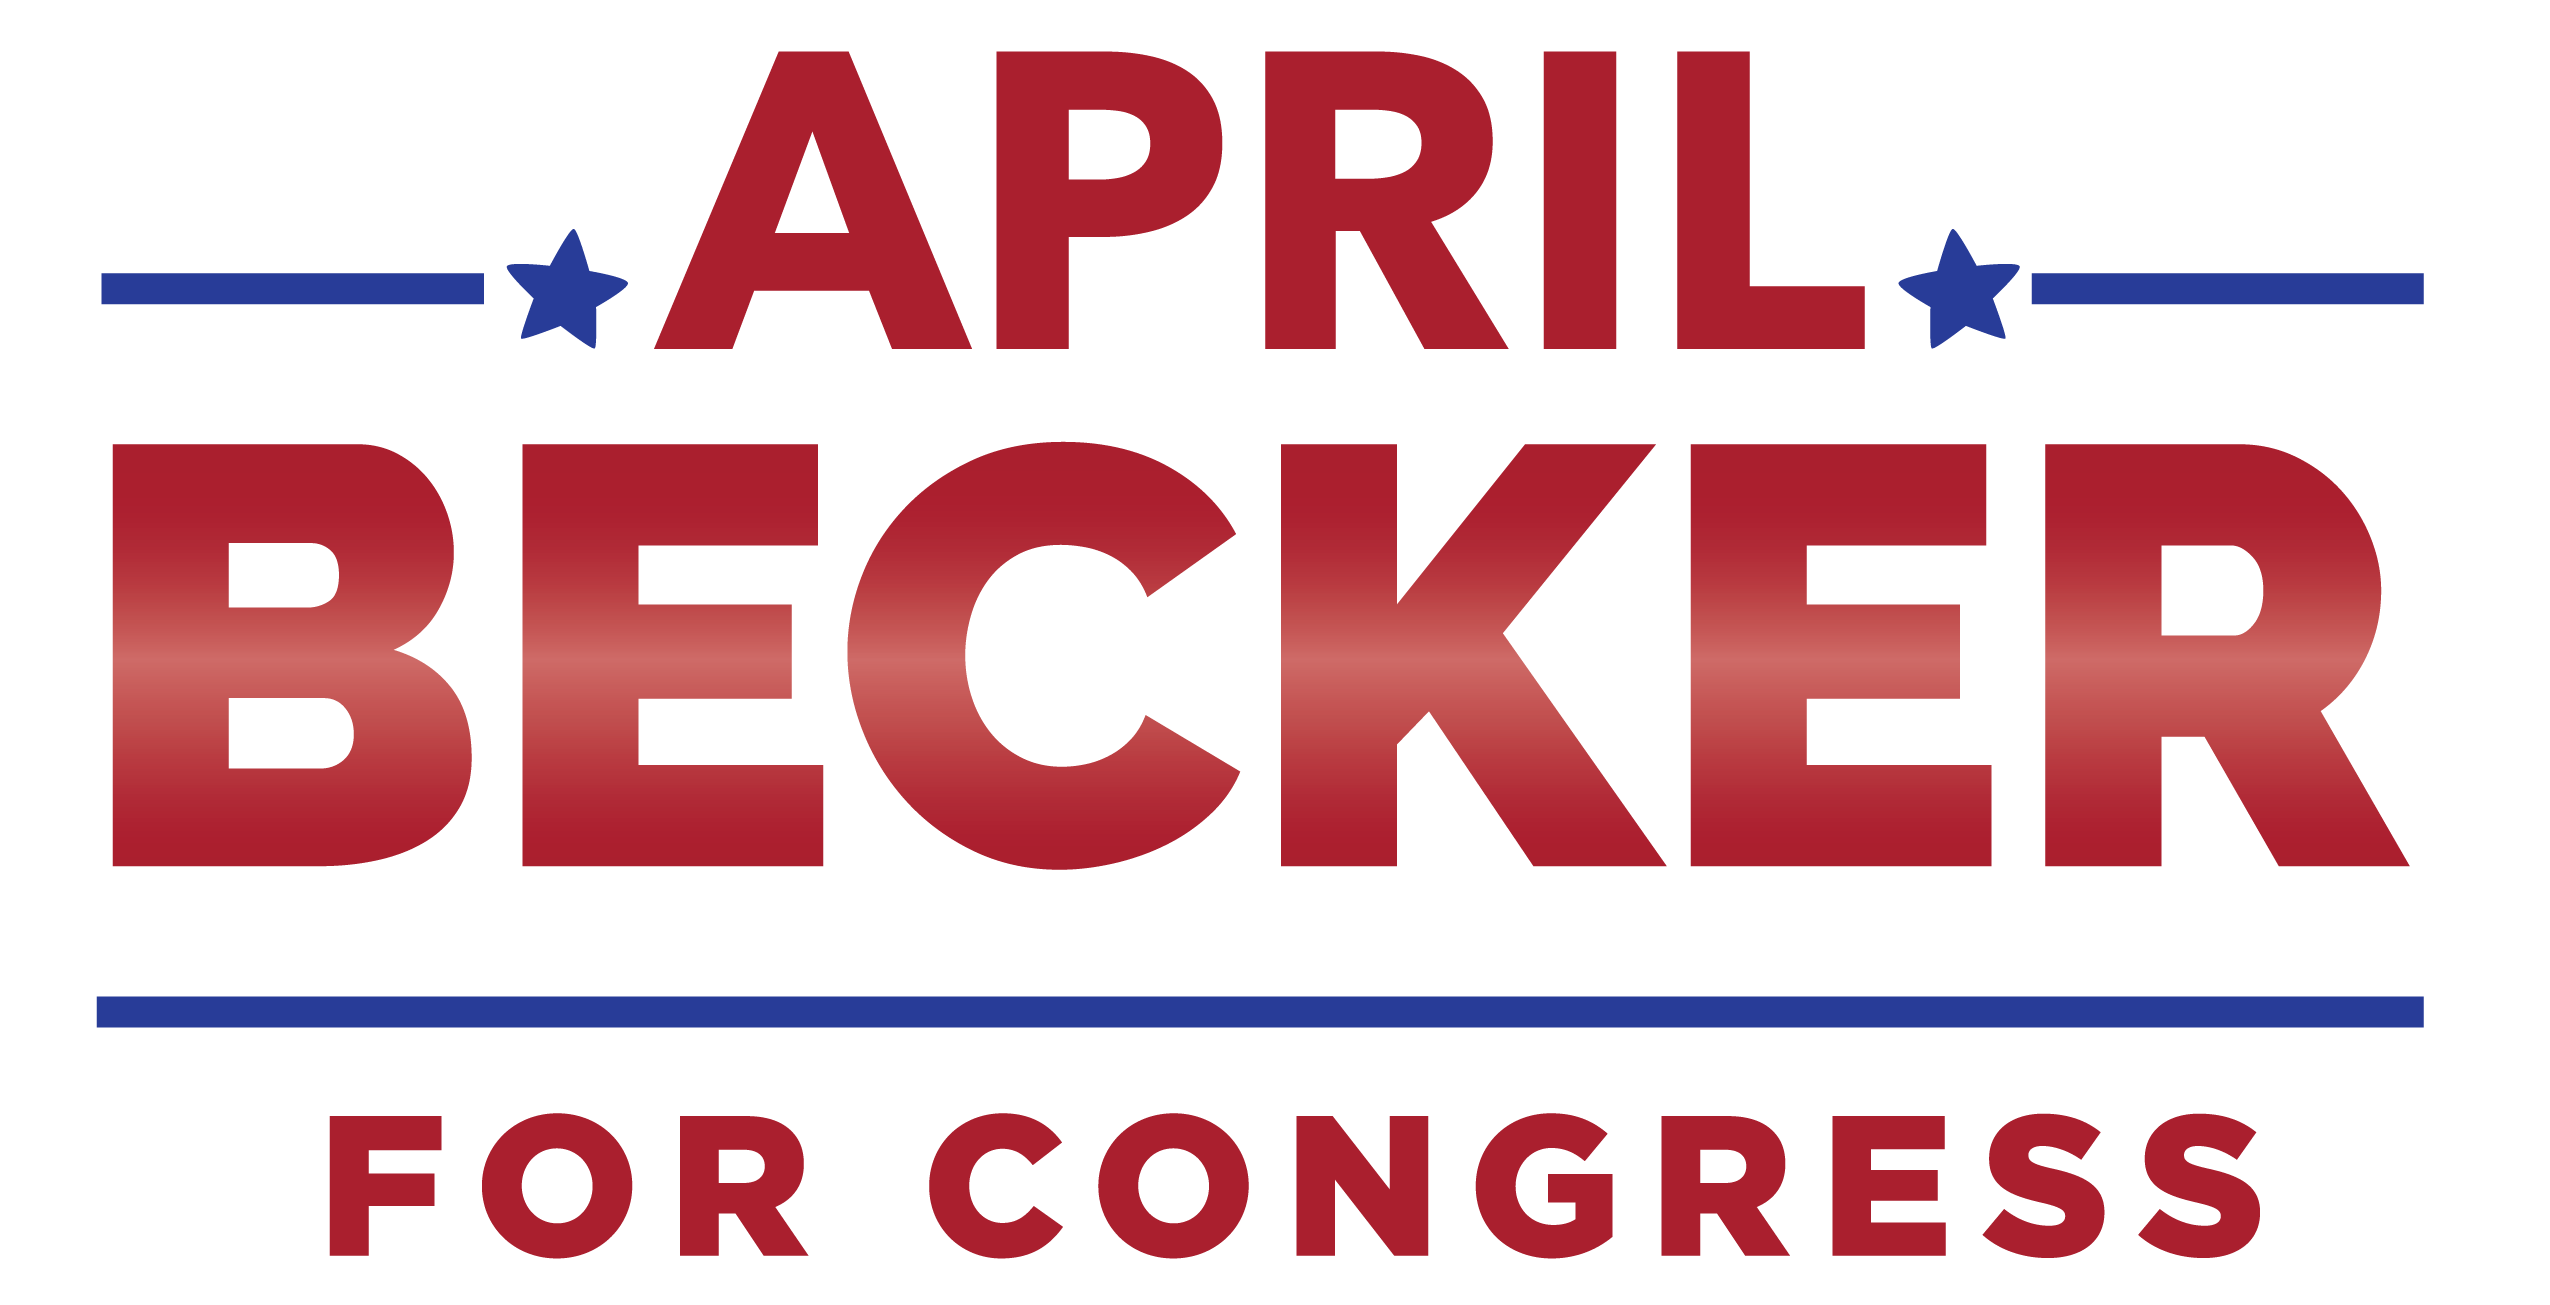 April Becker for Congress